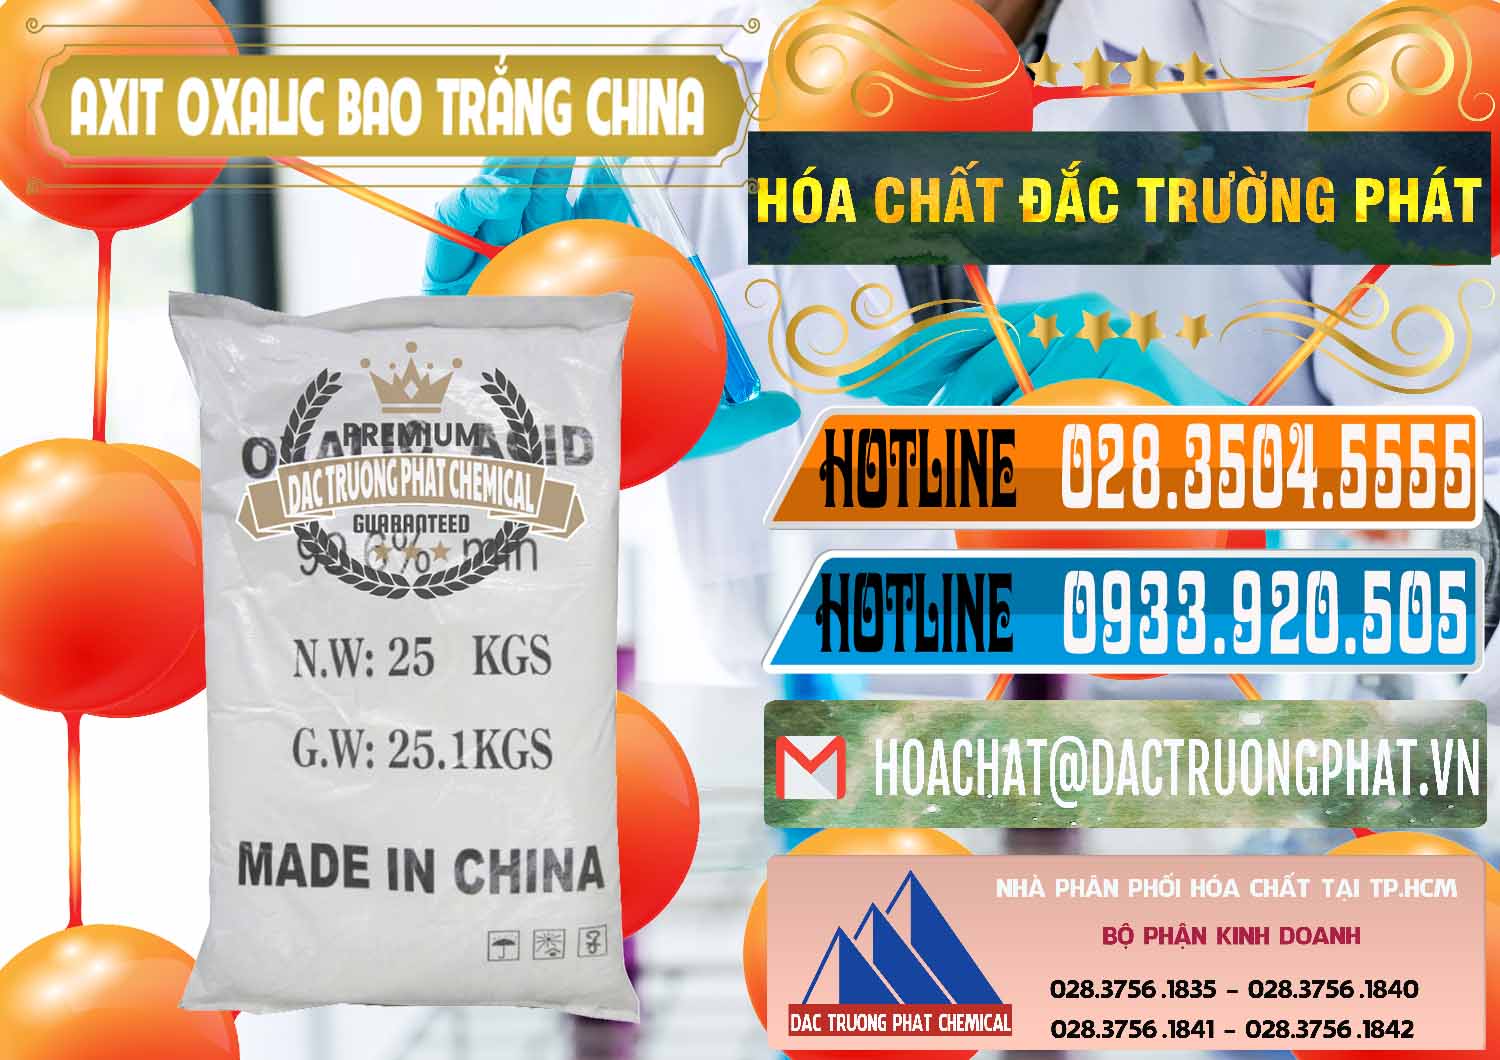 Cty chuyên cung ứng & bán Acid Oxalic – Axit Oxalic 99.6% Bao Trắng Trung Quốc China - 0270 - Cty bán _ phân phối hóa chất tại TP.HCM - stmp.net